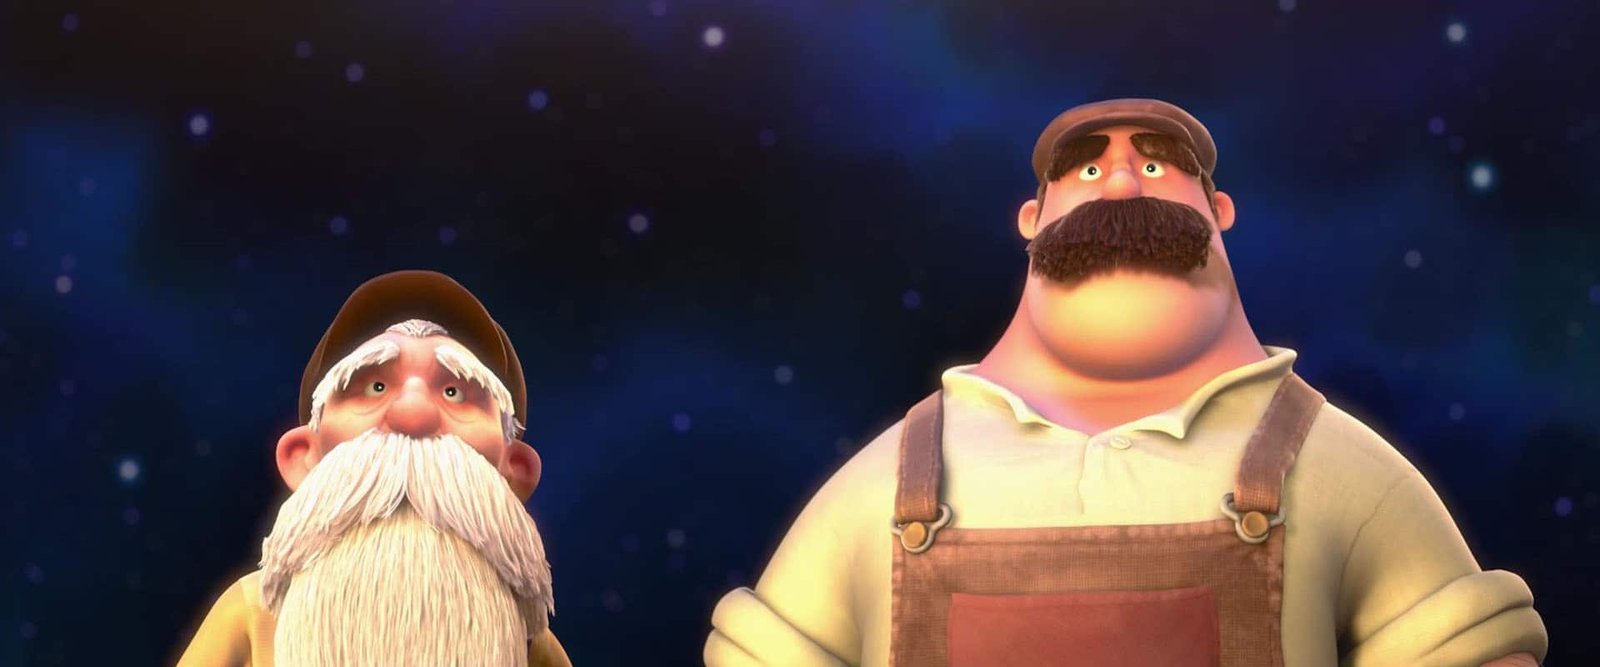 Deux personnages animés, un homme âgé de petite taille avec une barbe blanche et un homme plus grand et corpulent avec une moustache épaisse, tous deux vêtus d'une salopette, regardant vers le haut sur un ciel étoilé dans Luca